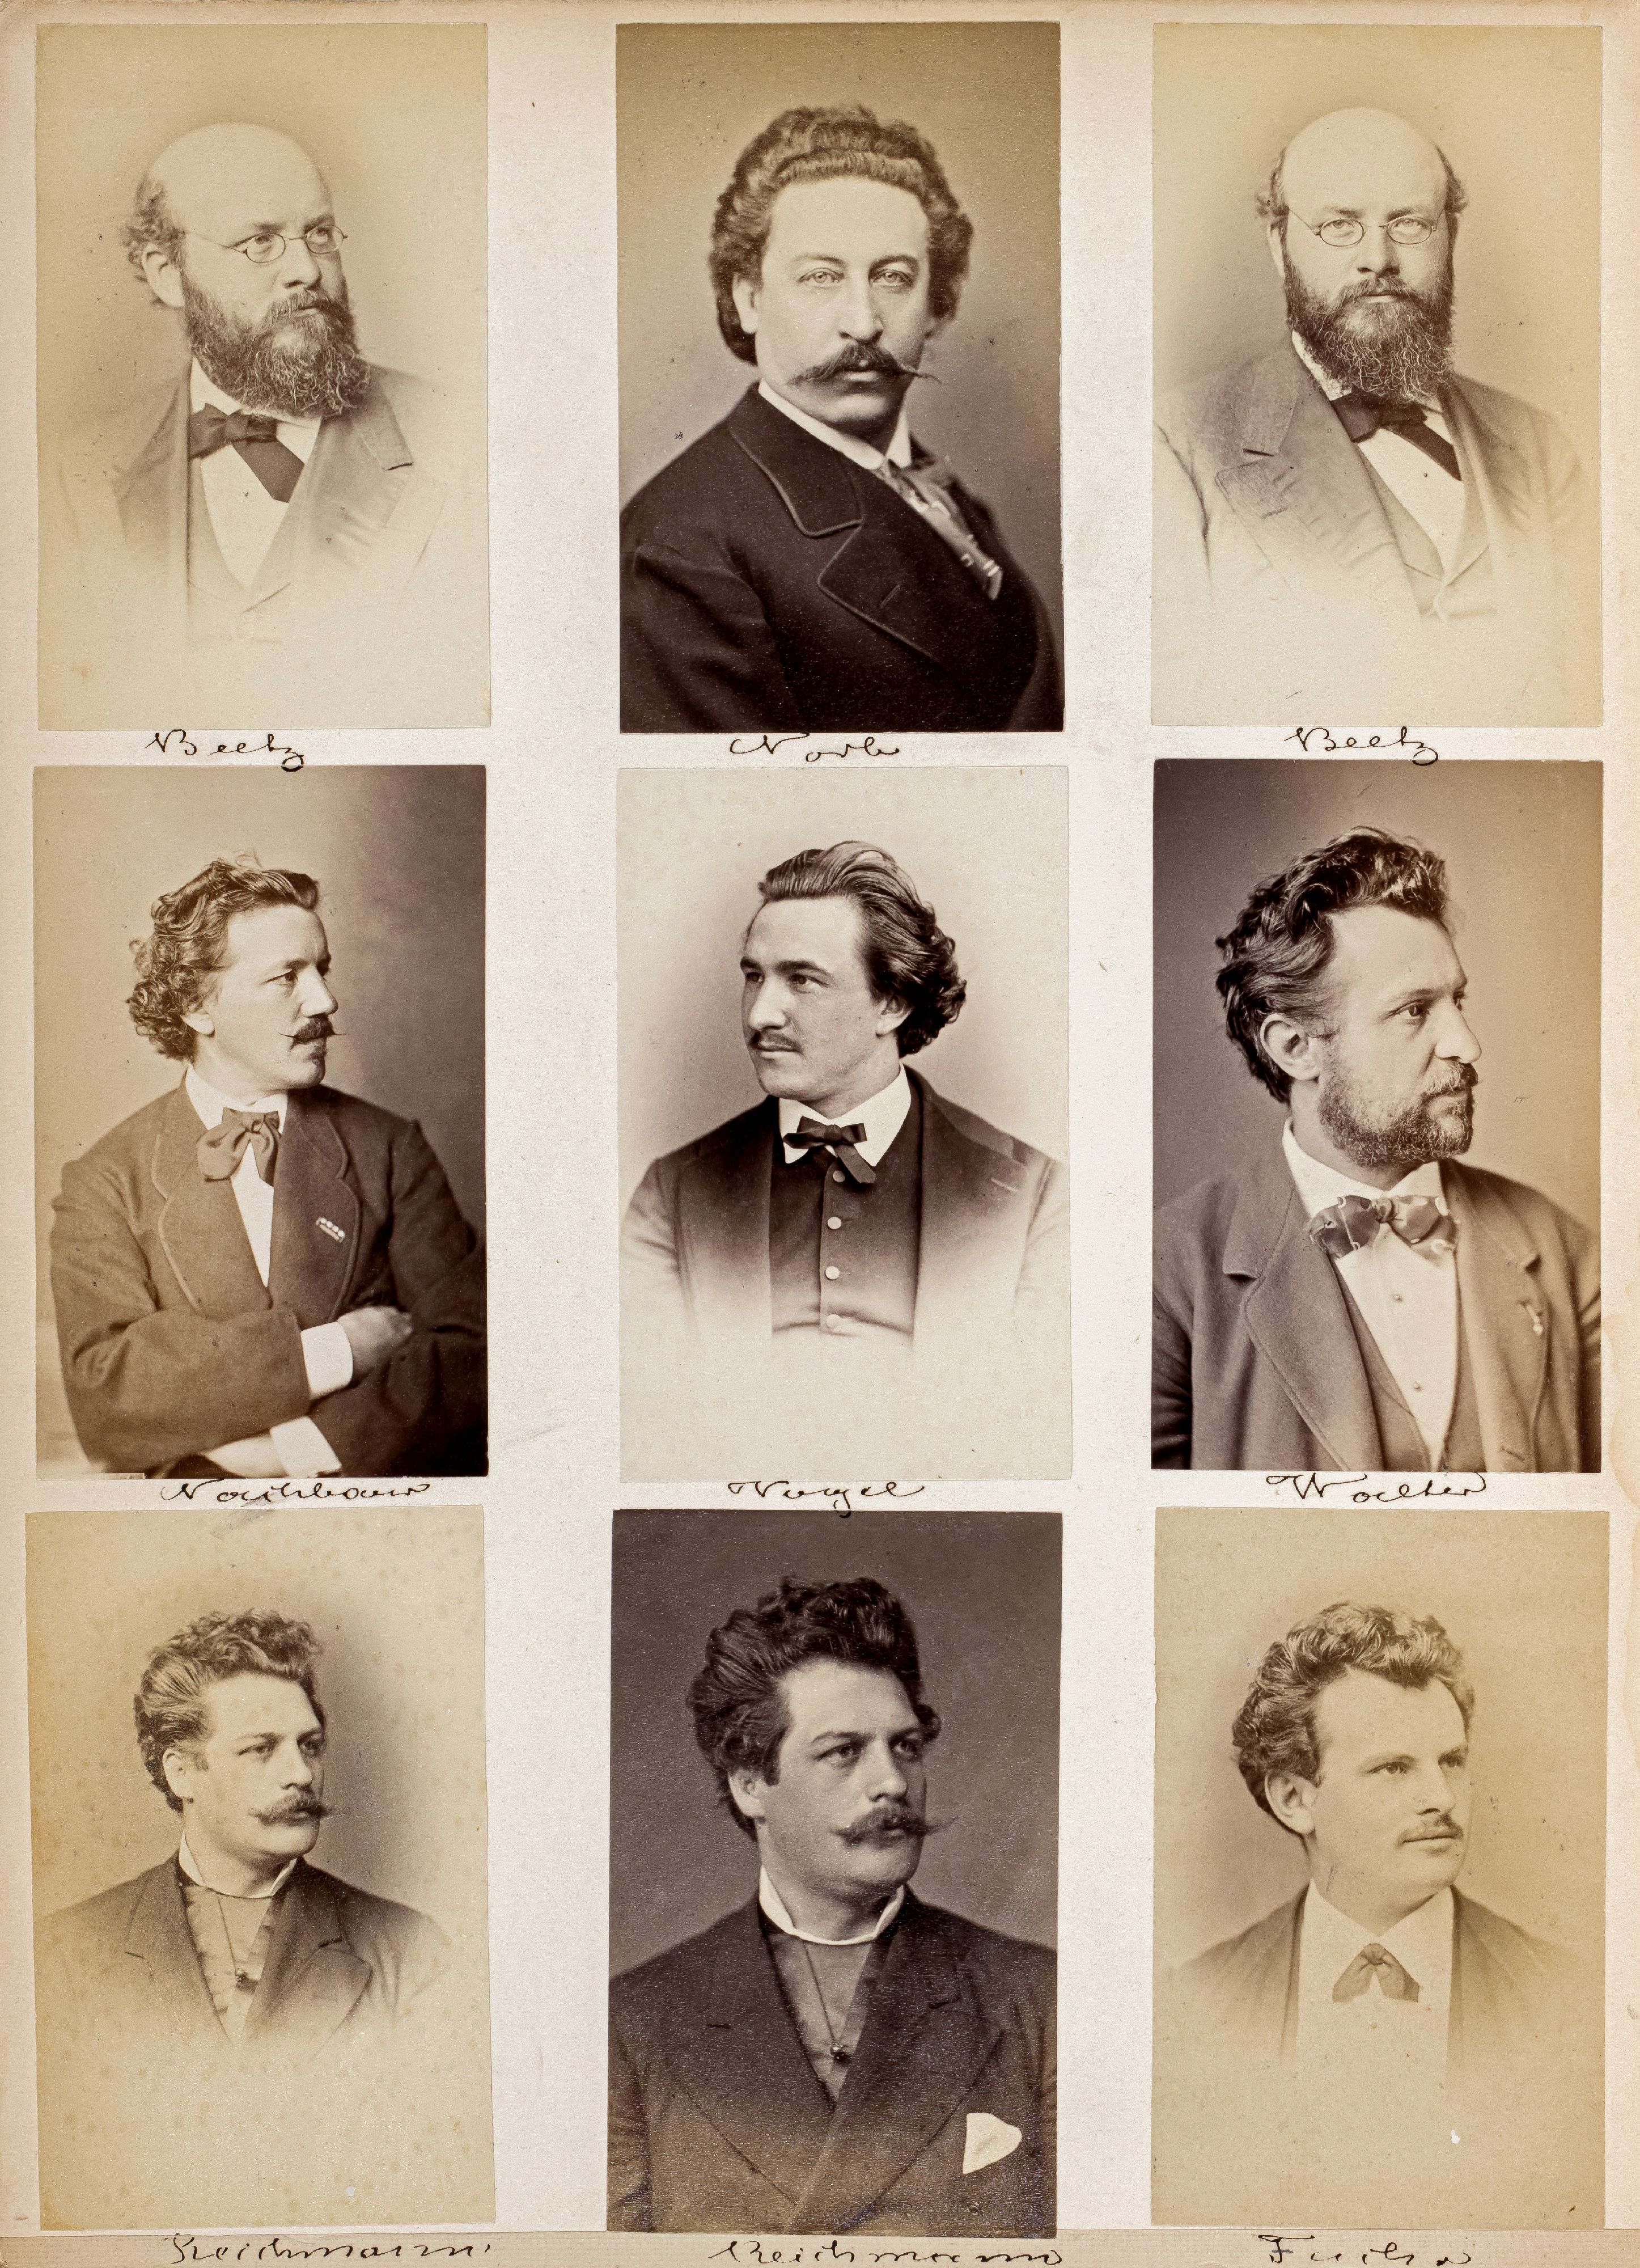 FOTOGRAFIE | Hanfstaengl, Franz | 1807 Baiernrain bei Tölz - 1877 München - Image 19 of 25